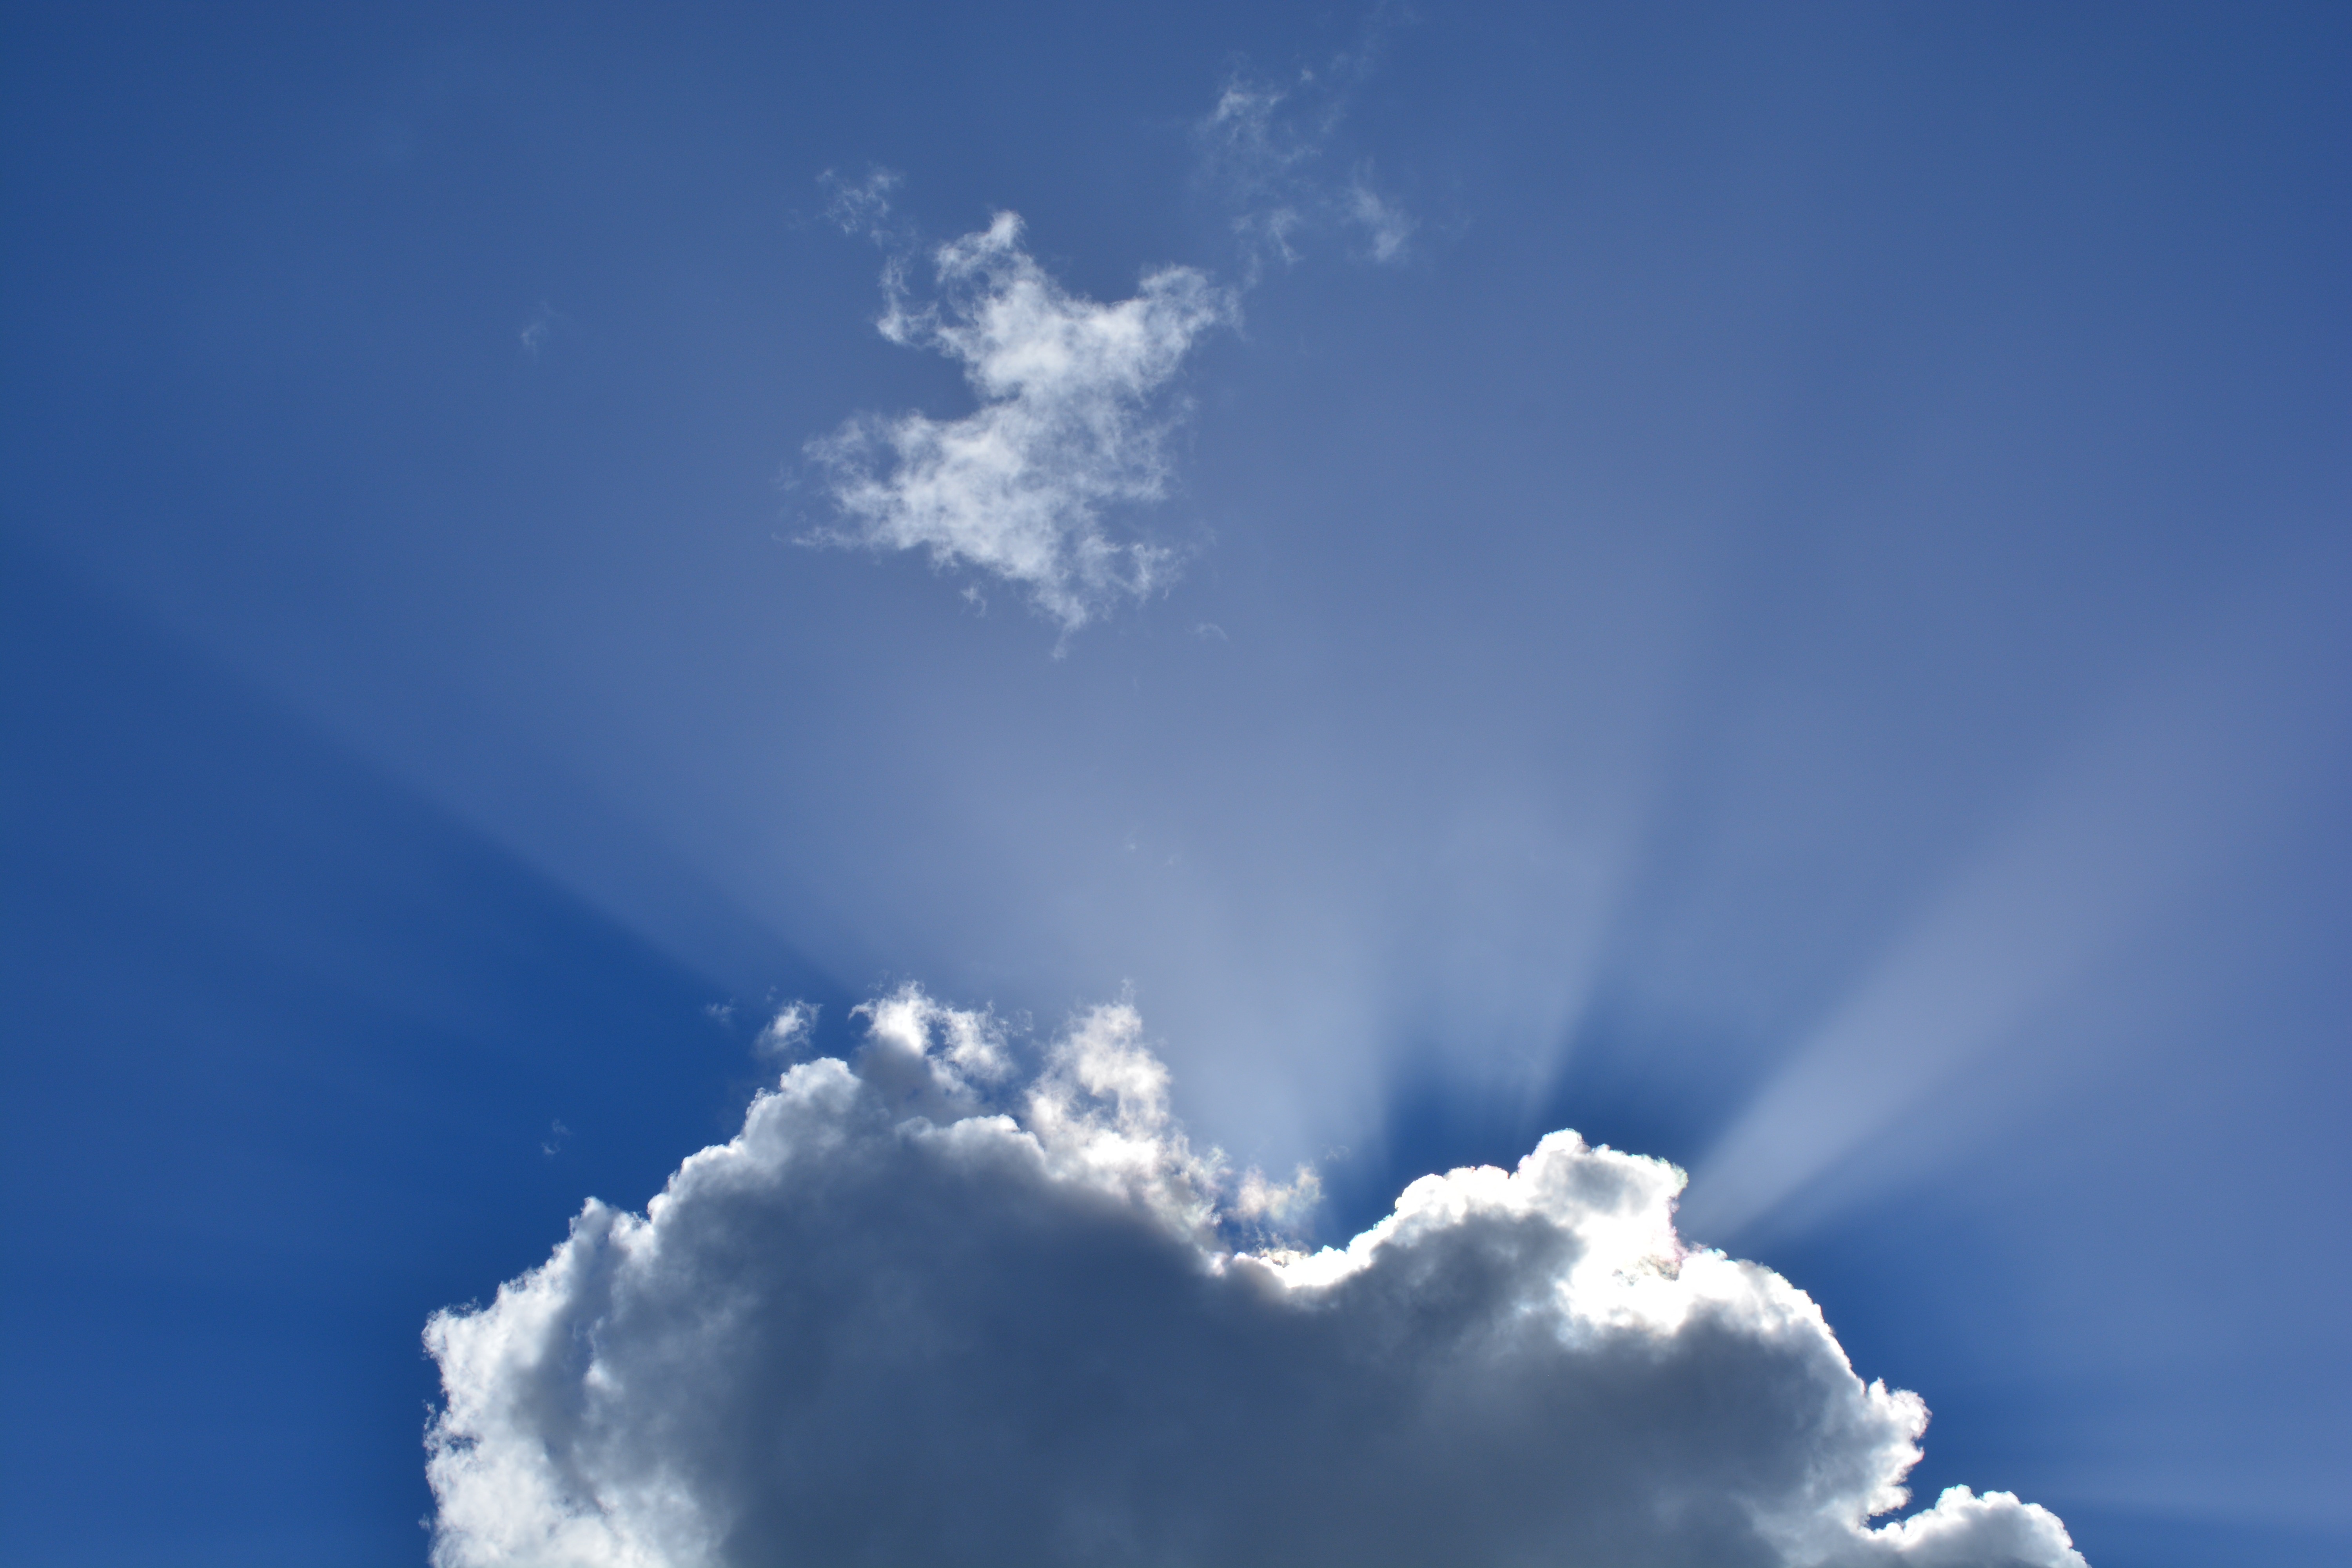 Фото природа, горизонт, облако, небо, солнечный свет, атмосфера, дневной, кумулус, синий, облака, темные облака, формирование облаков, метеорологическое явление, атмосфера земли, небесные лучи - бесплатные картинки на Fonwall